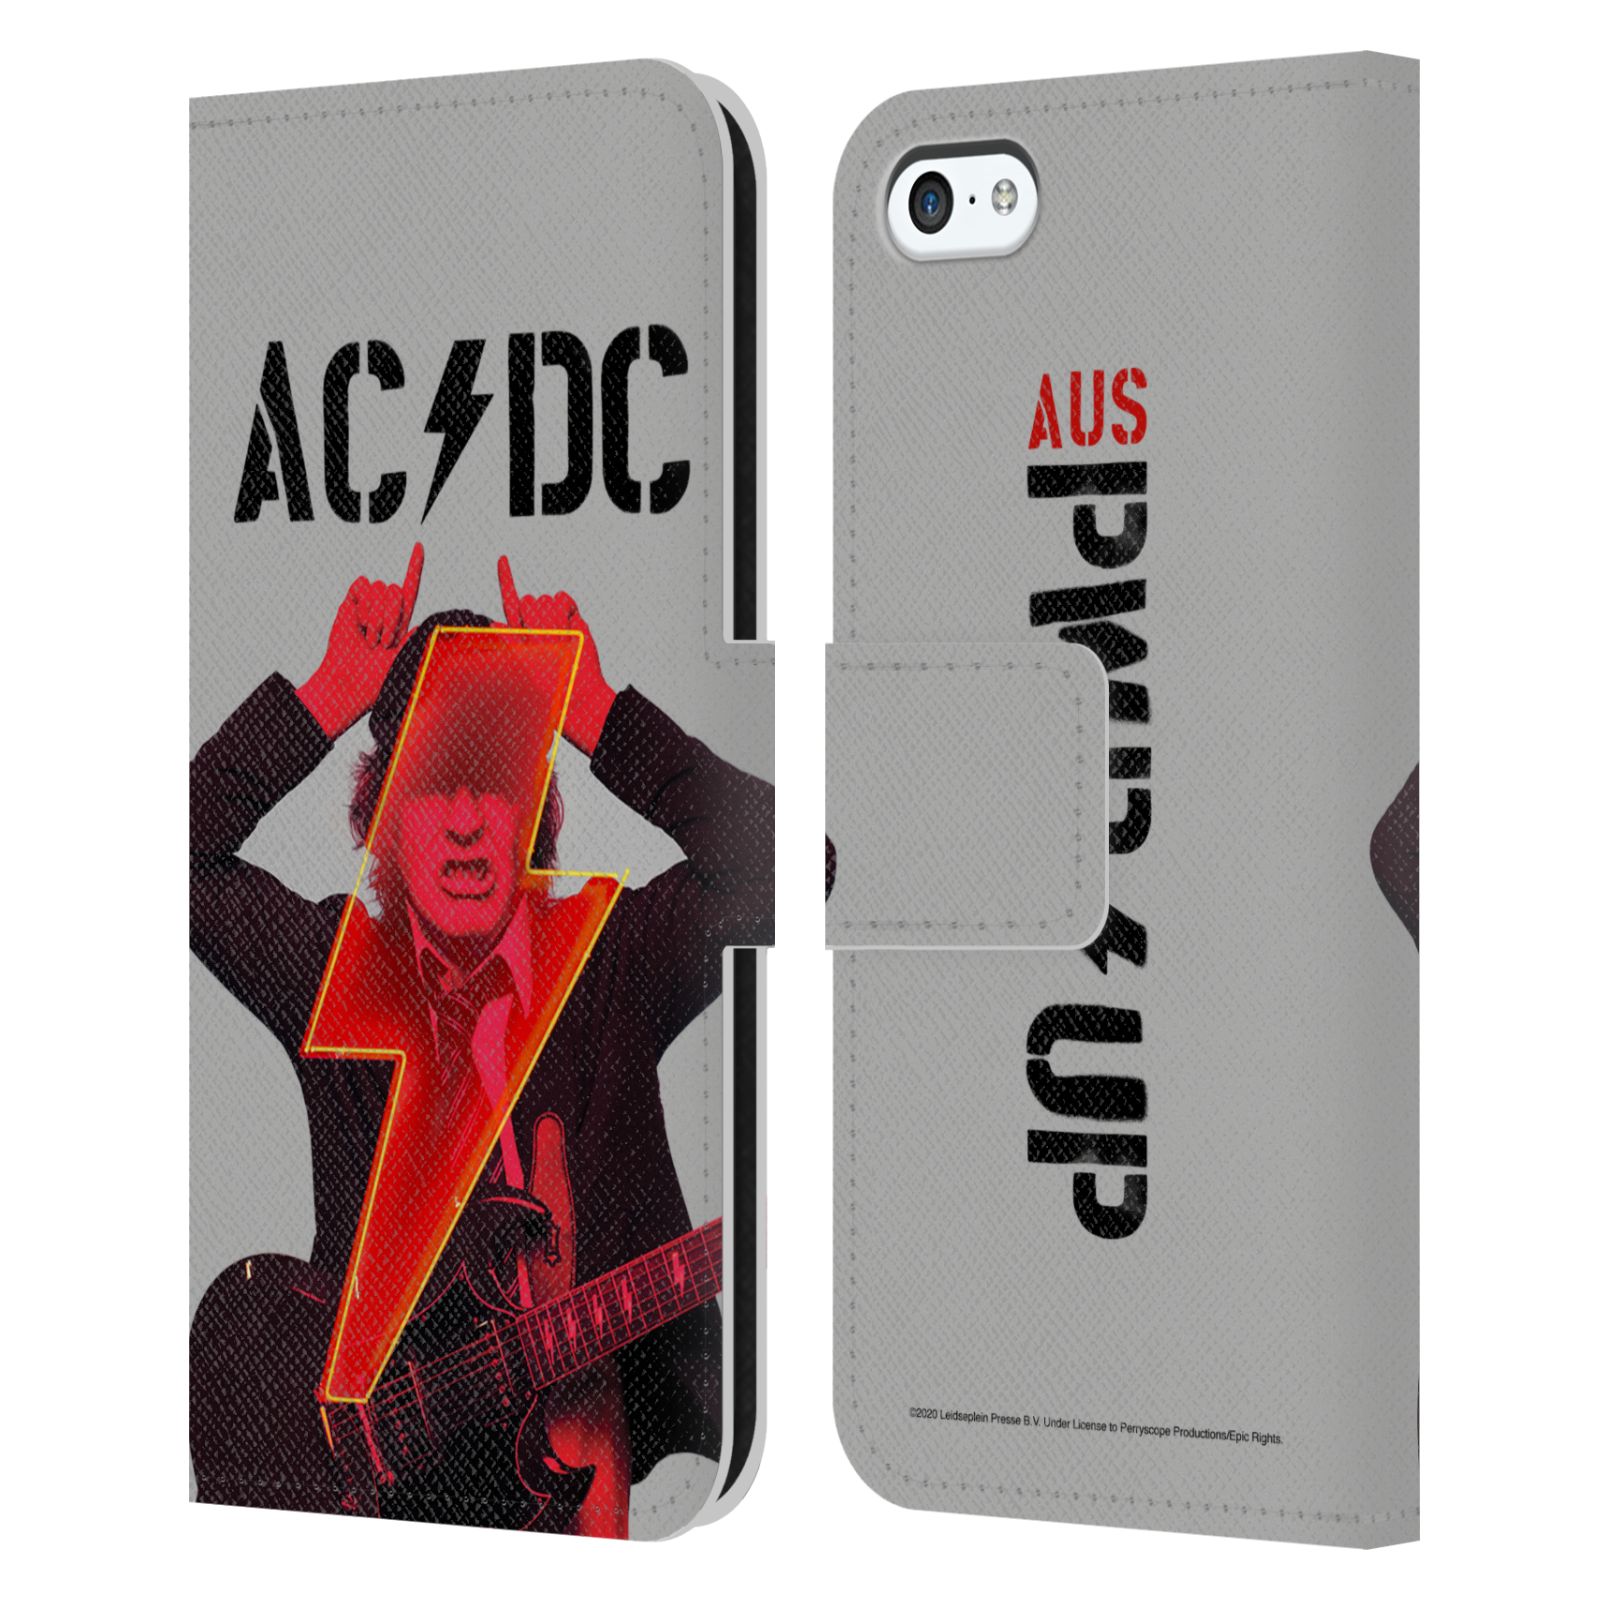 Pouzdro na mobil Apple Iphone 5C - HEAD CASE - Rocková skupin ACDC - Rudý ďábel